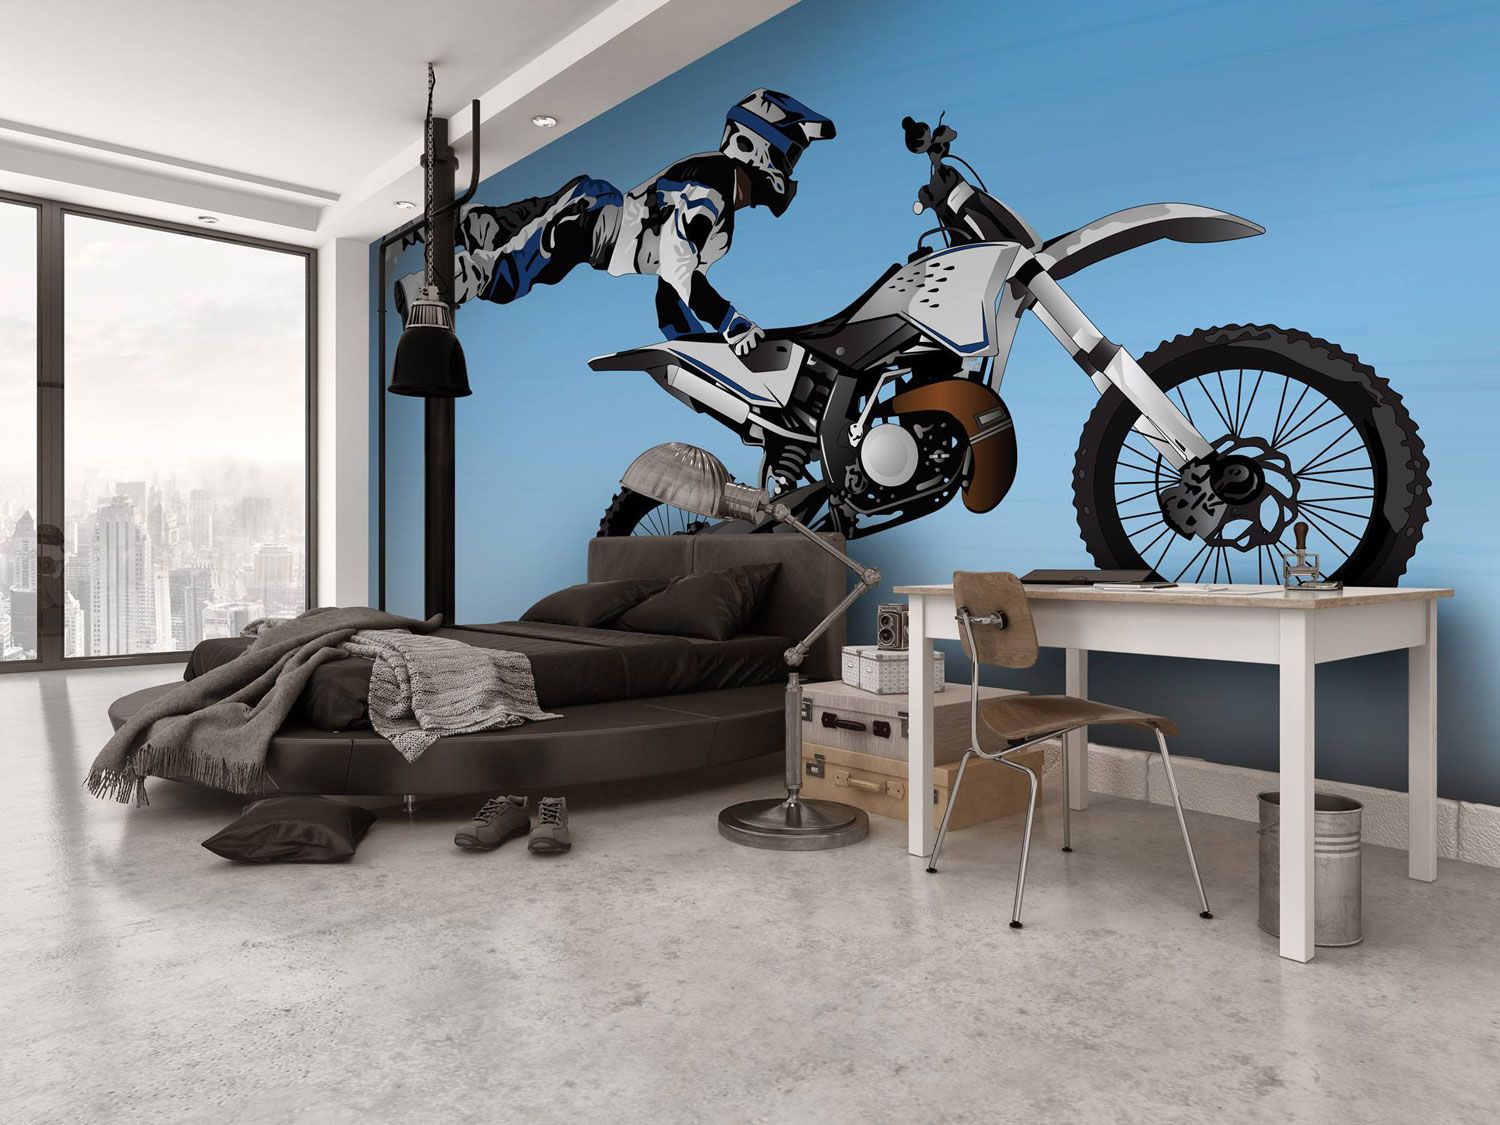 Motorbike-mural-in-boys-bedroom